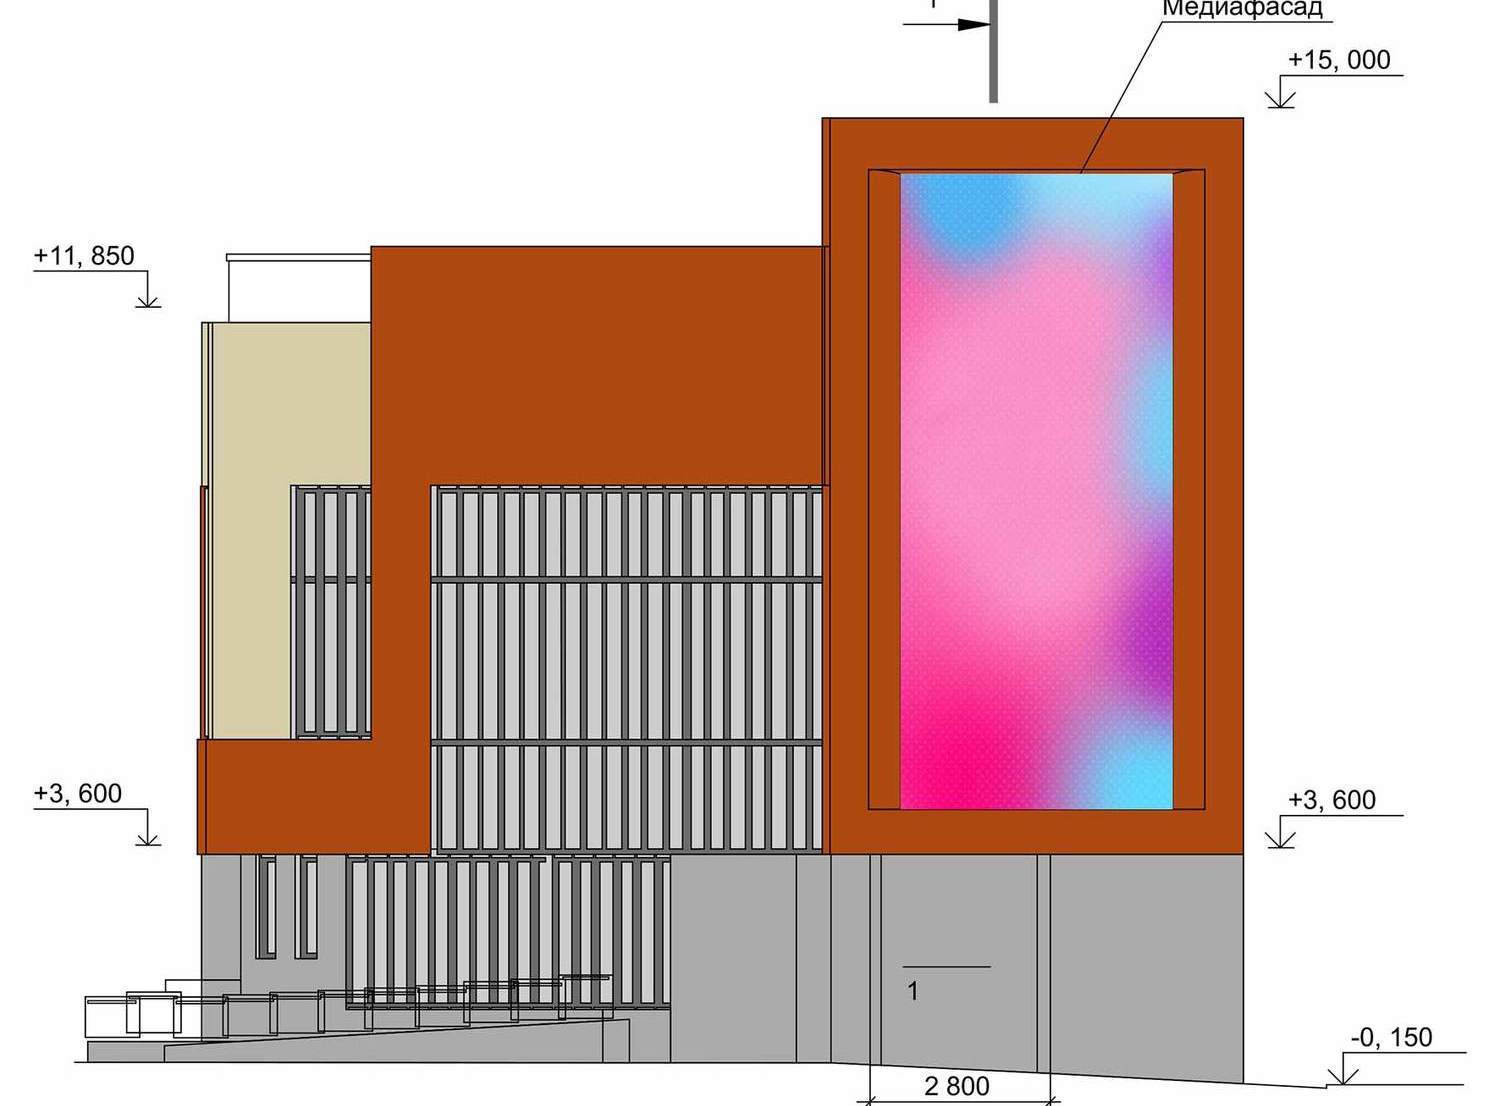 Дизайн-проект размещения вывесок на фасадах здания, проект медиафасада для согласования